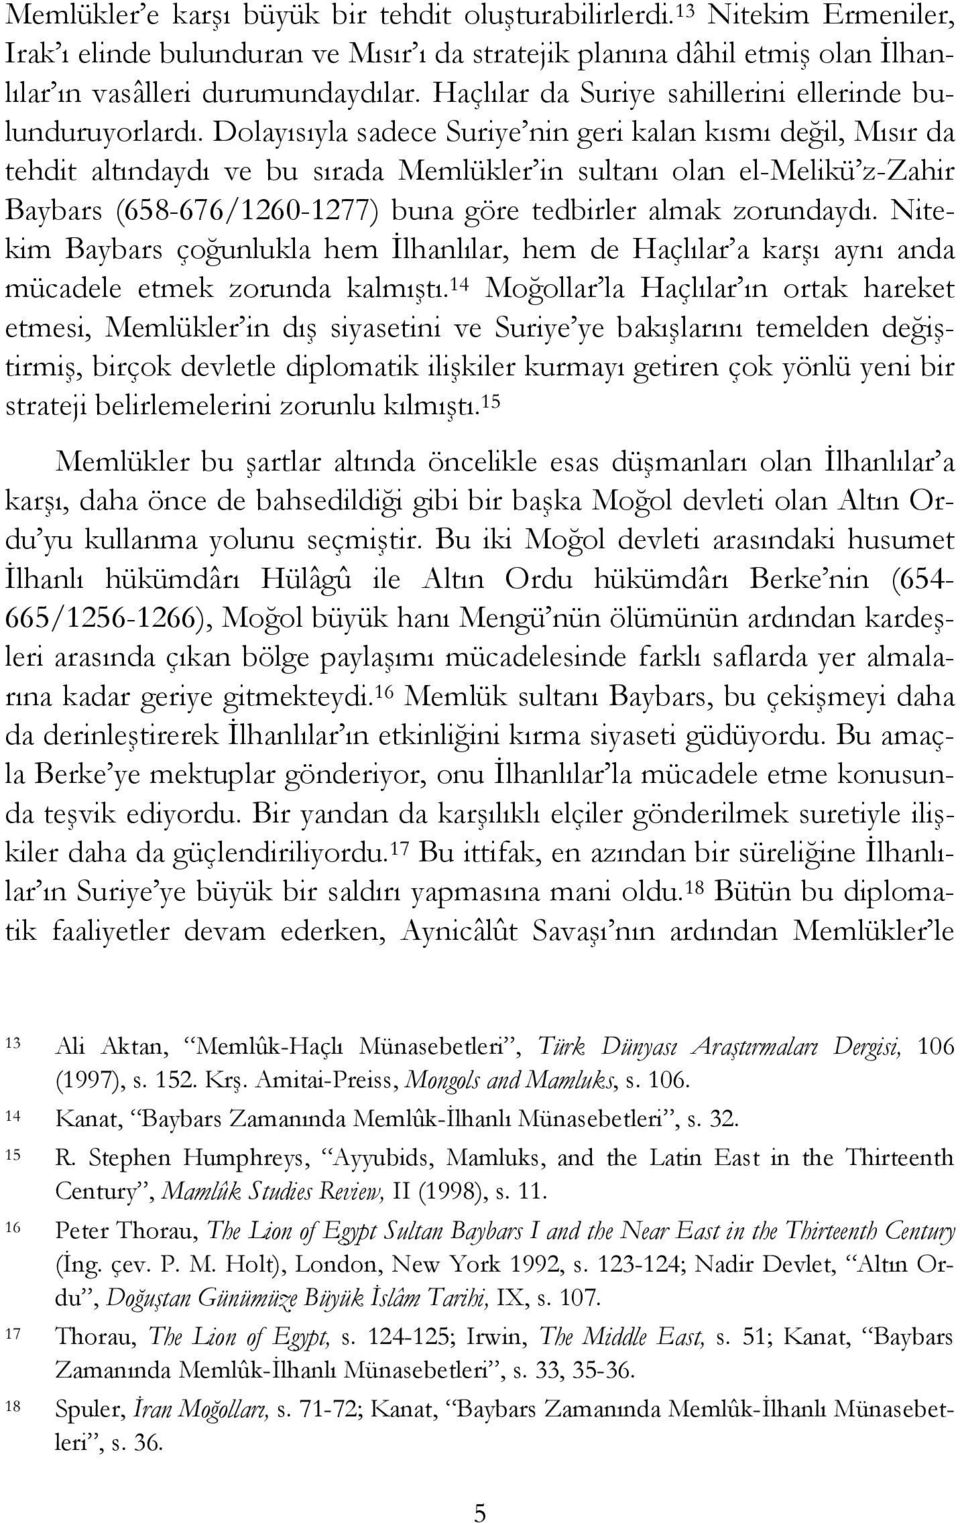 Dolayısıyla sadece Suriye nin geri kalan kısmı değil, Mısır da tehdit altındaydı ve bu sırada Memlükler in sultanı olan el-melikü z-zahir Baybars (658-676/1260-1277) buna göre tedbirler almak